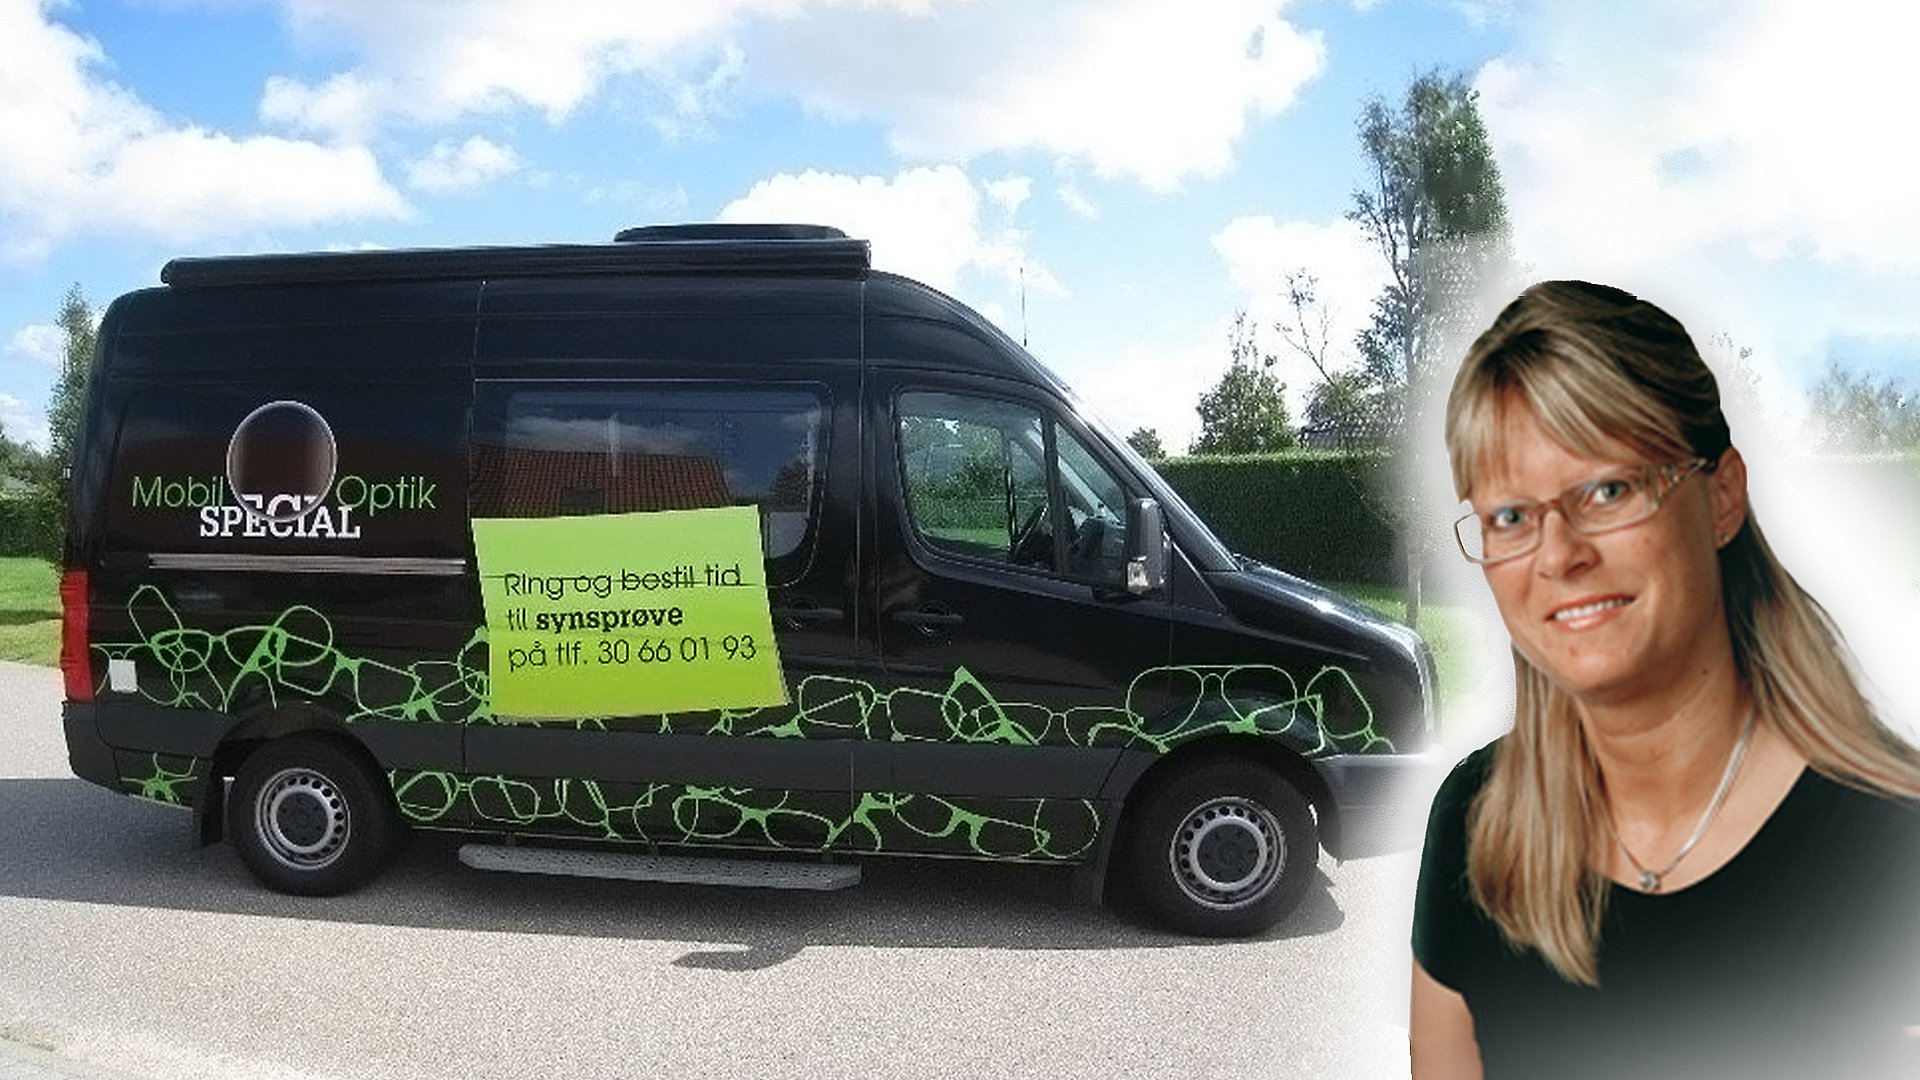 Forventning Infrarød Mudret Birgitte ånder lettet op: Rullende brillebutik er fundet | TV SYD